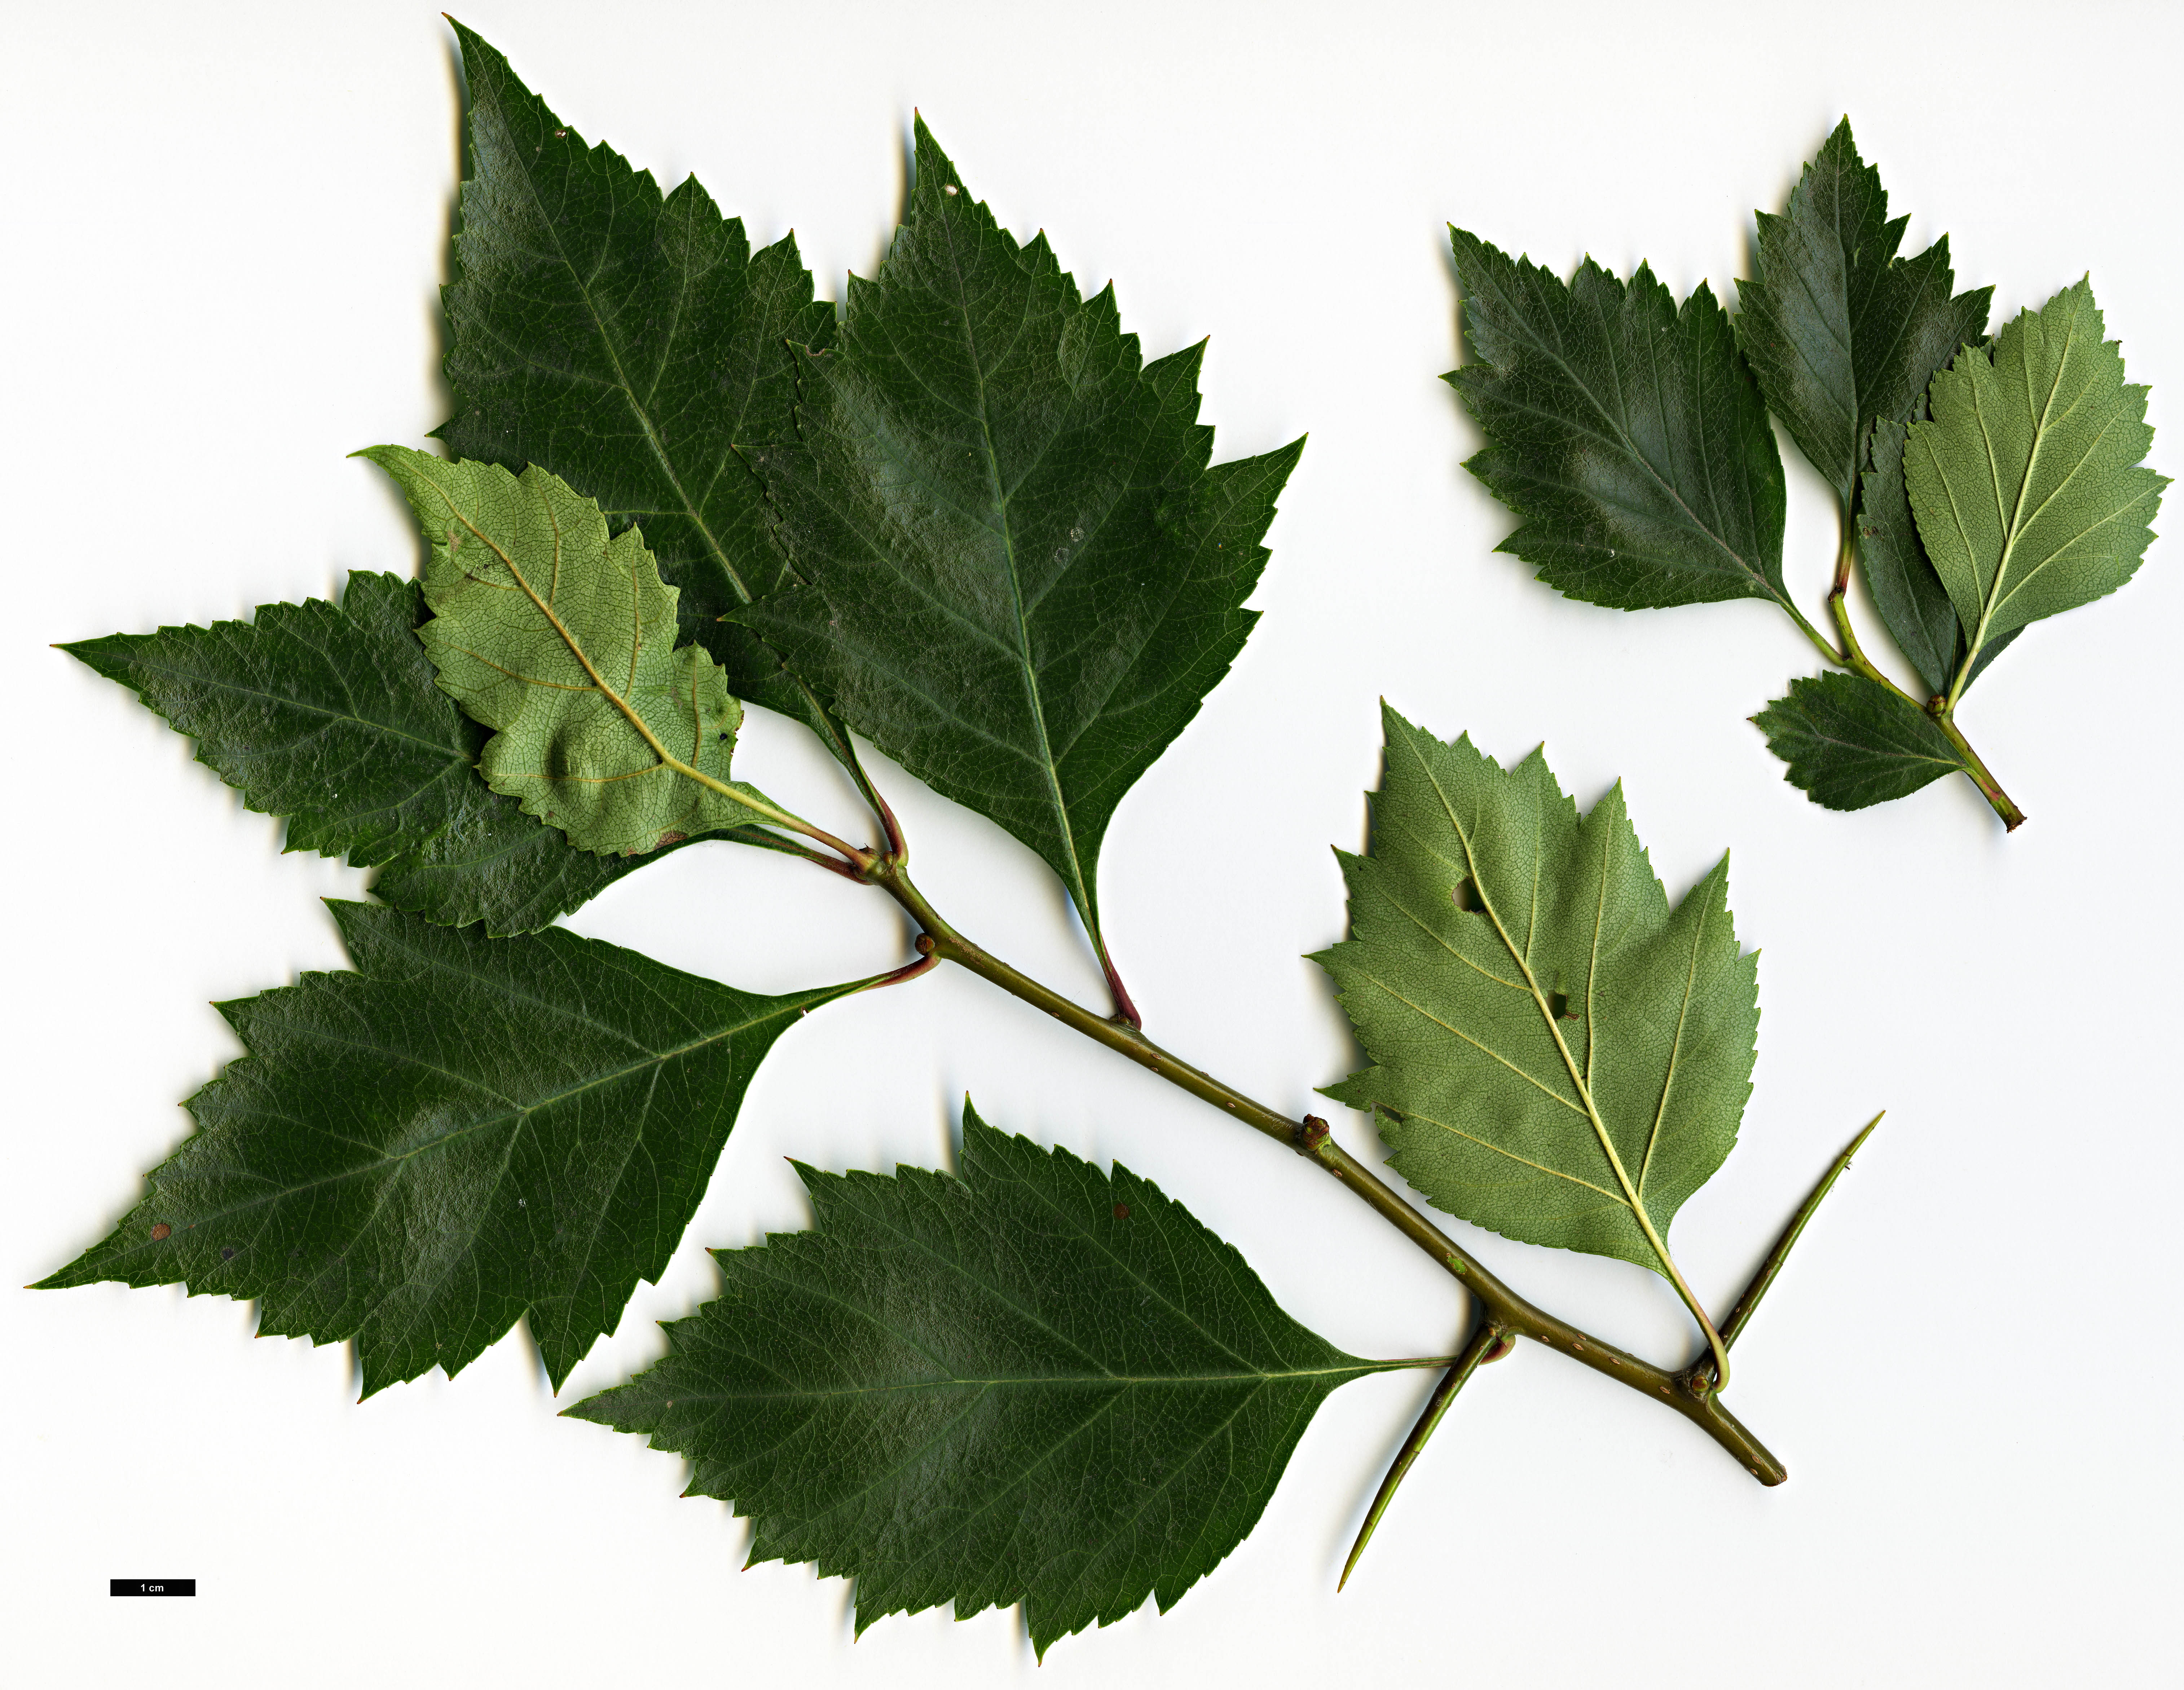 High resolution image: Family: Rosaceae - Genus: Crataegus - Taxon: cerronis